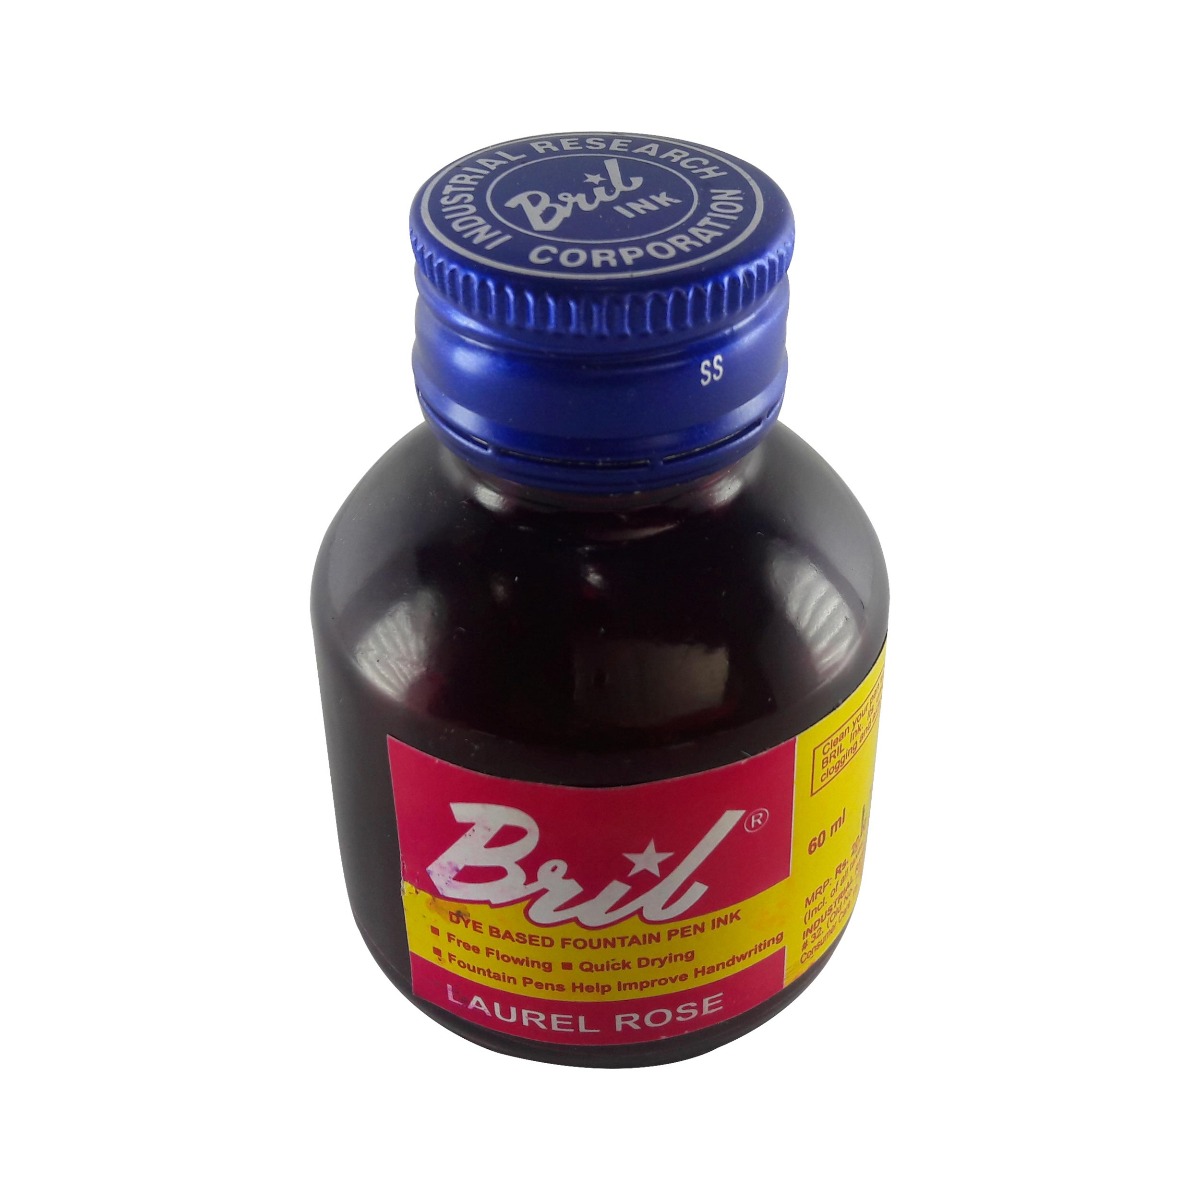 Bril Model: 70016 Laurel rose 60ml ink bottle